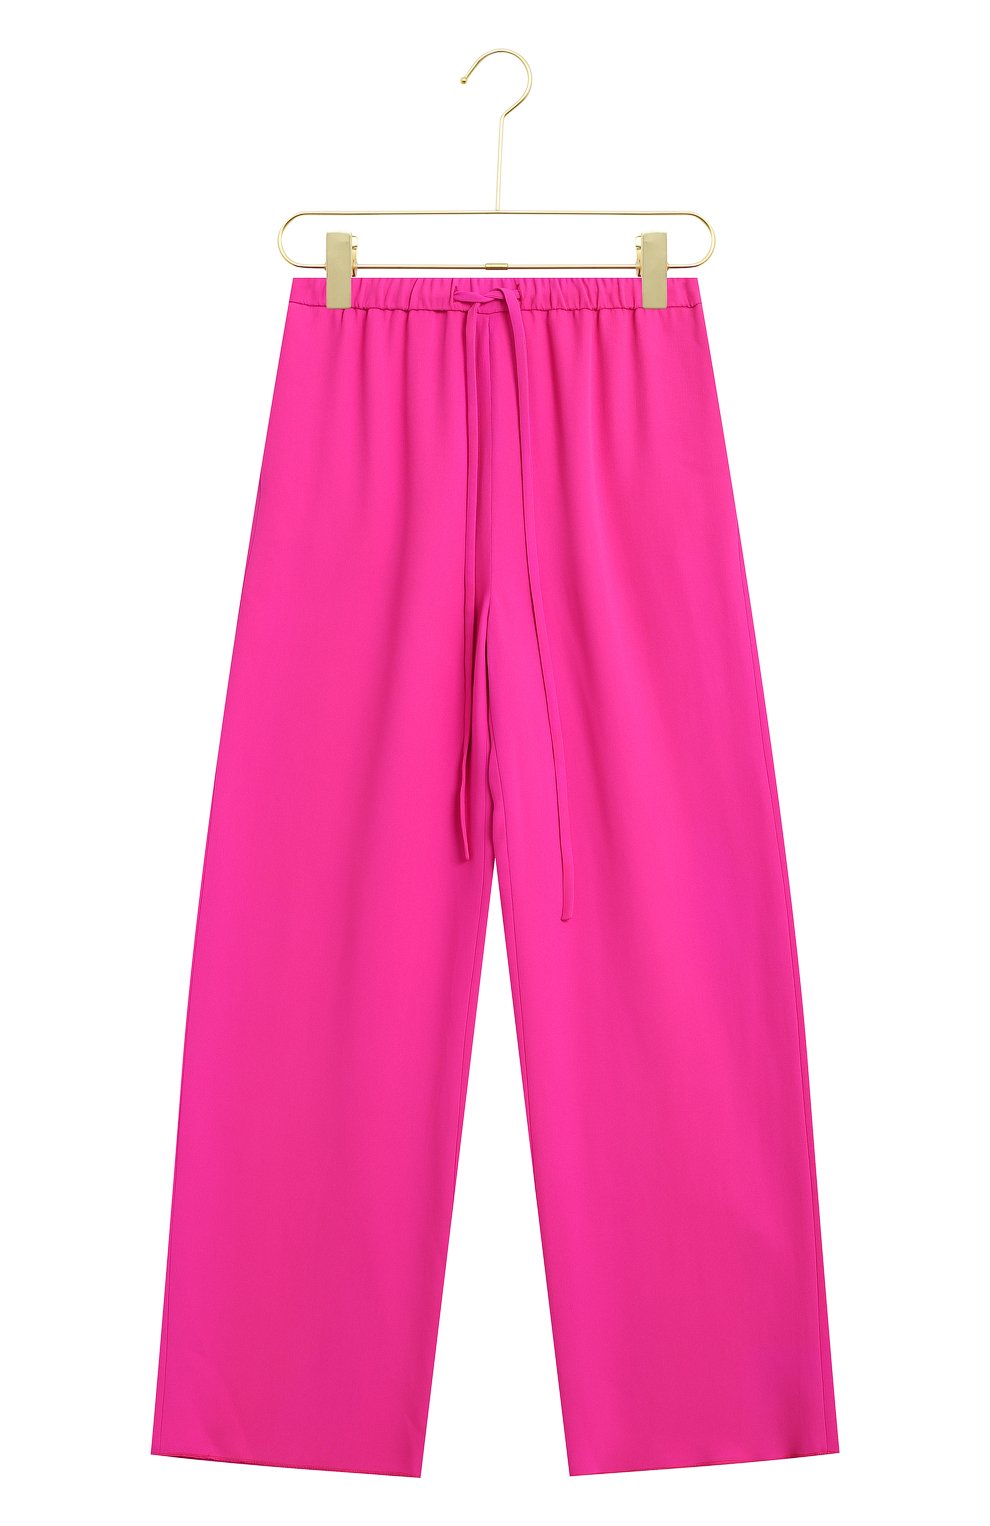 Шелковые брюки | Valentino | Розовый - 1